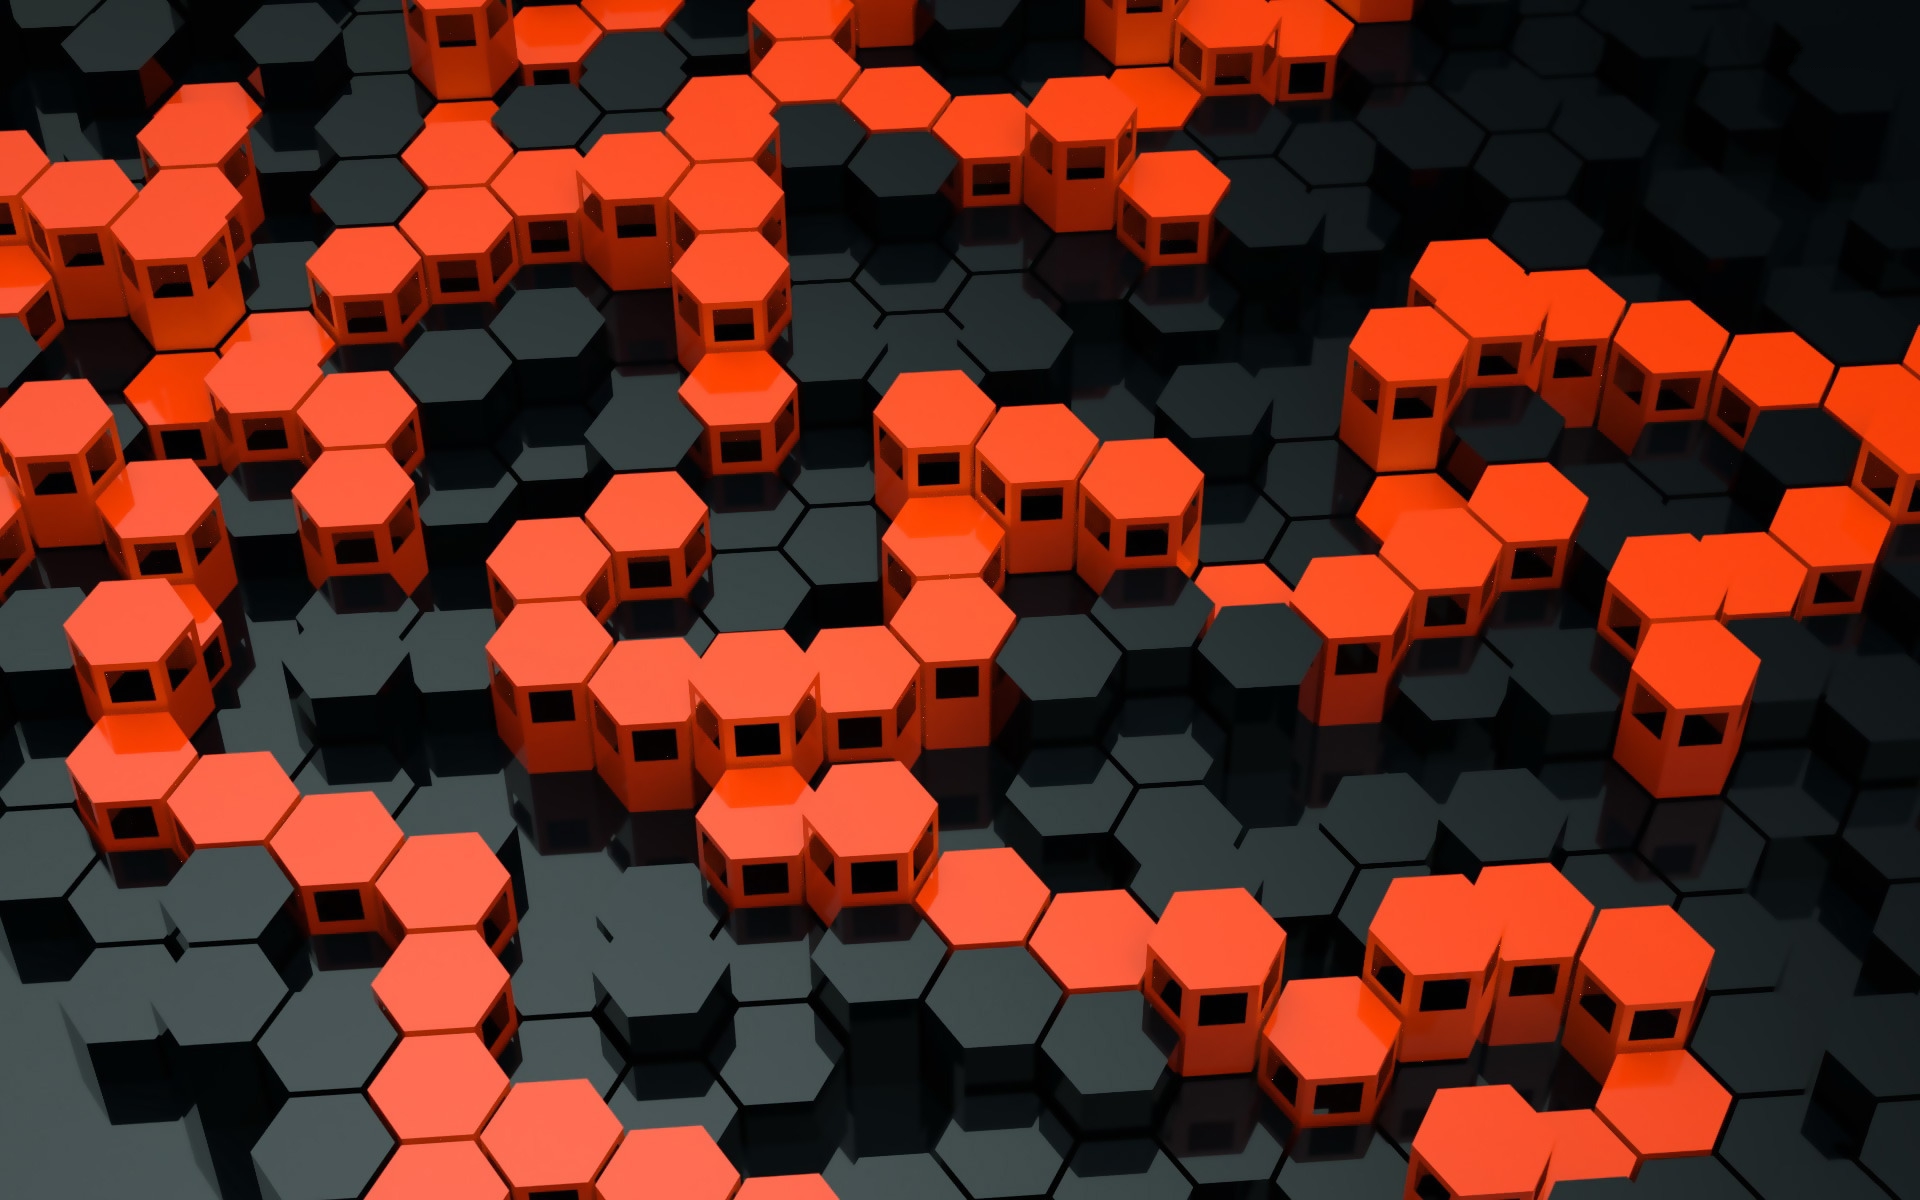  Black  and Orange  Desktop Wallpaper  PixelsTalk Net